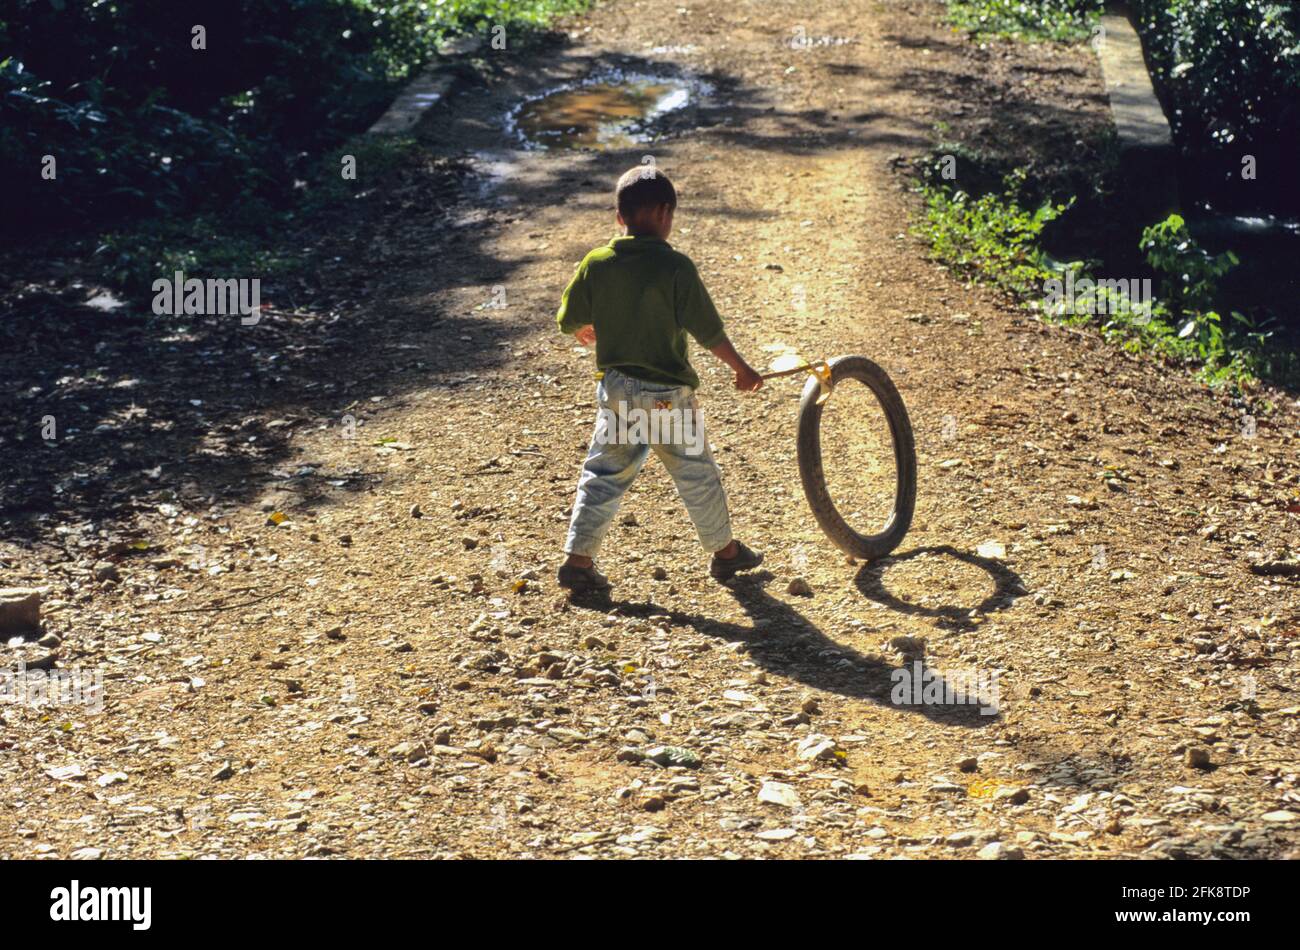 Domenikanische Republik, mit Mopedreifen spielender Junge, auf Samana Banque D'Images